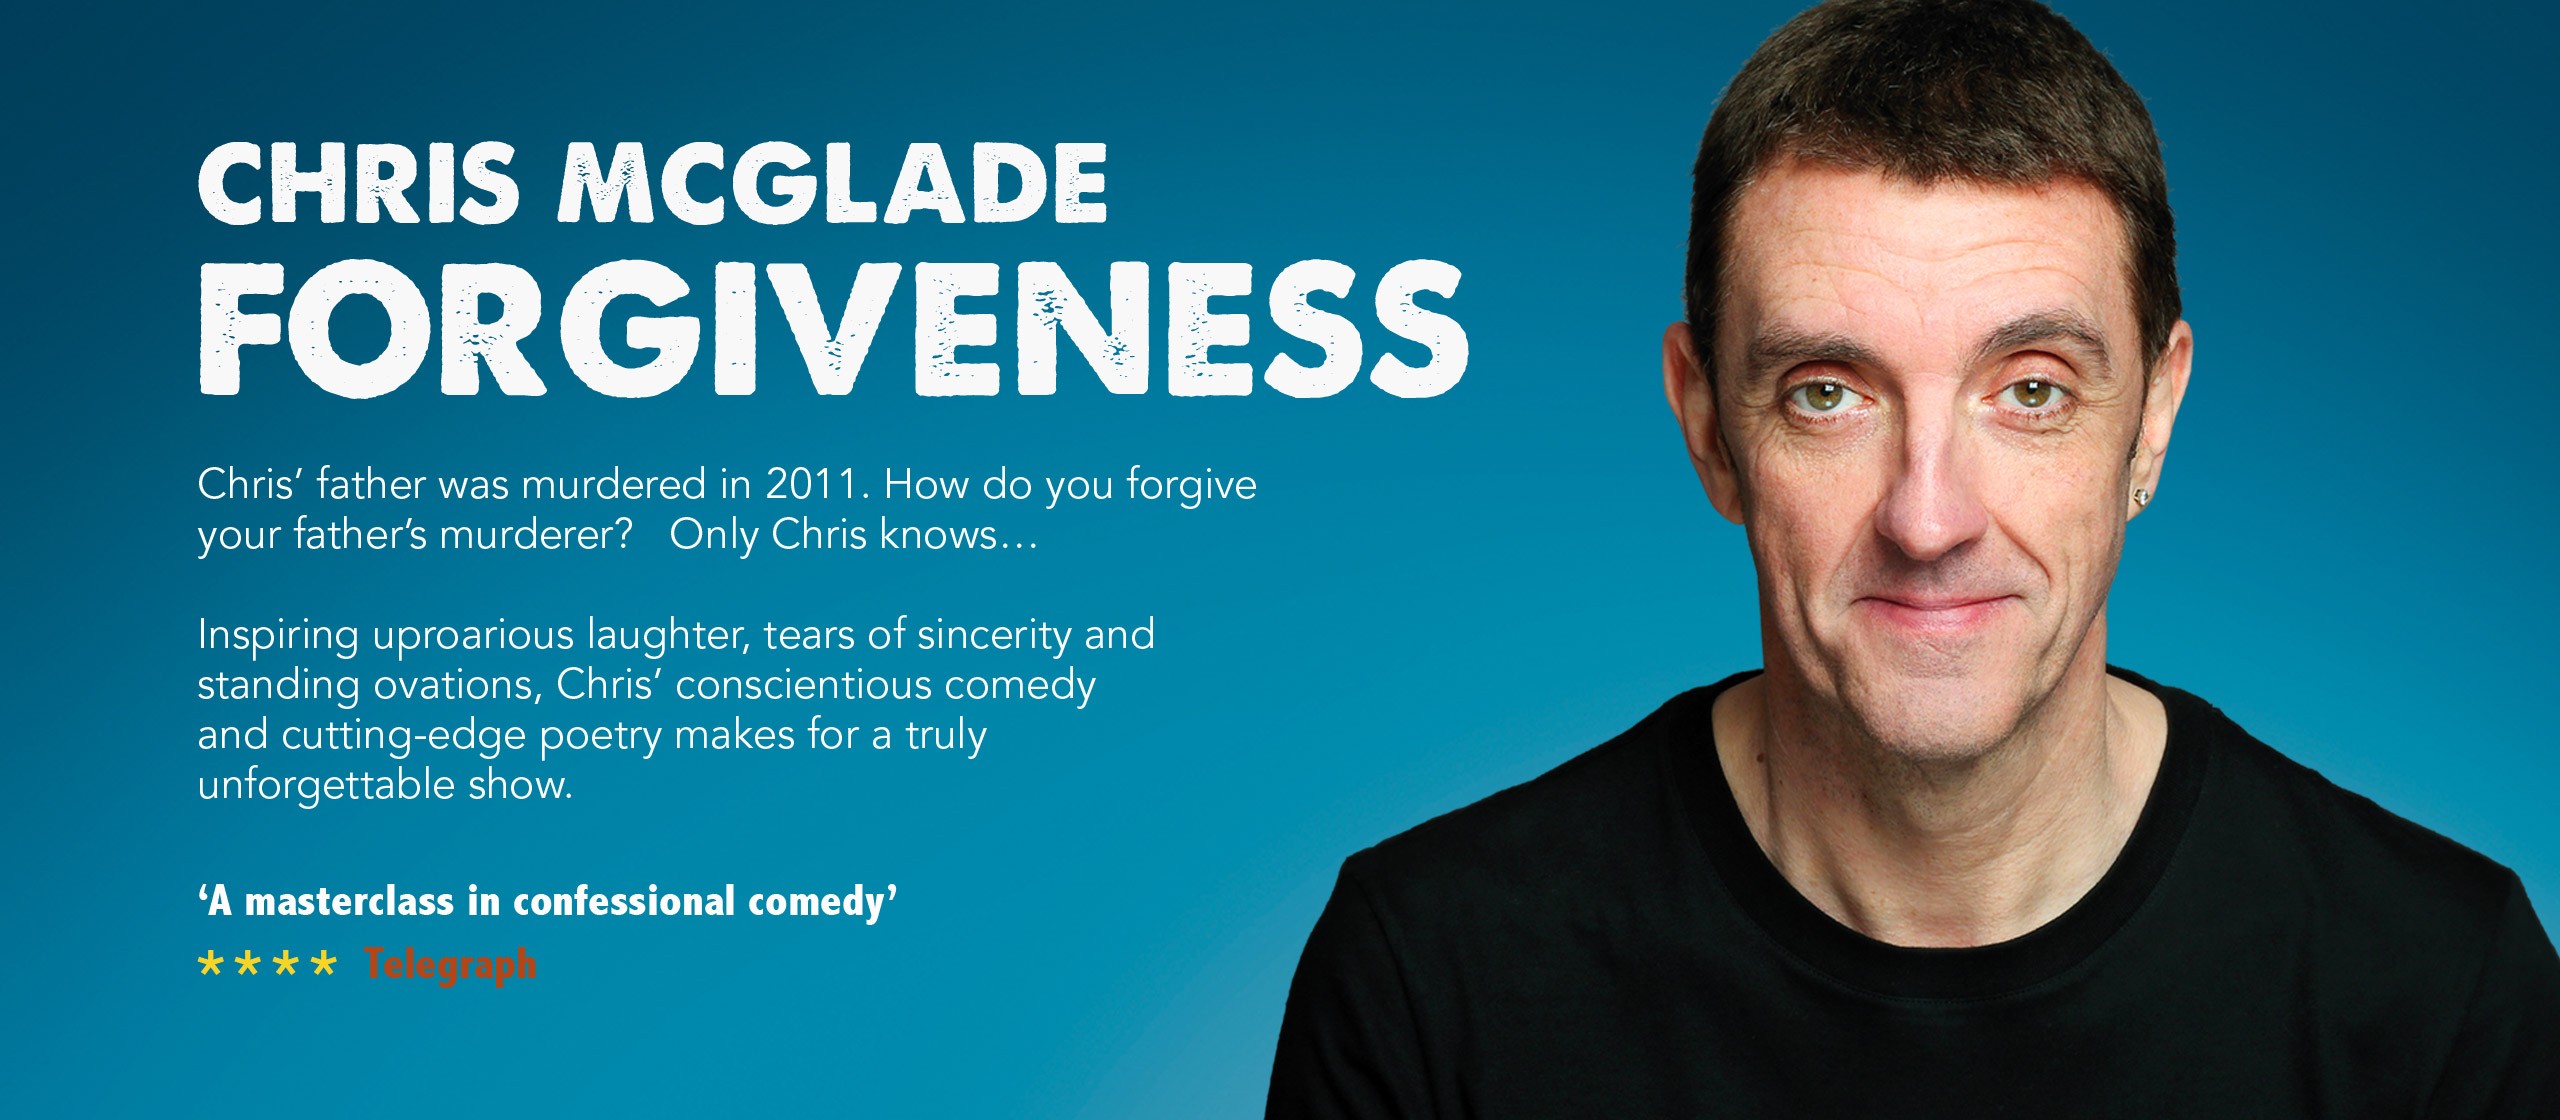 Chris McGlade: Forgiveness